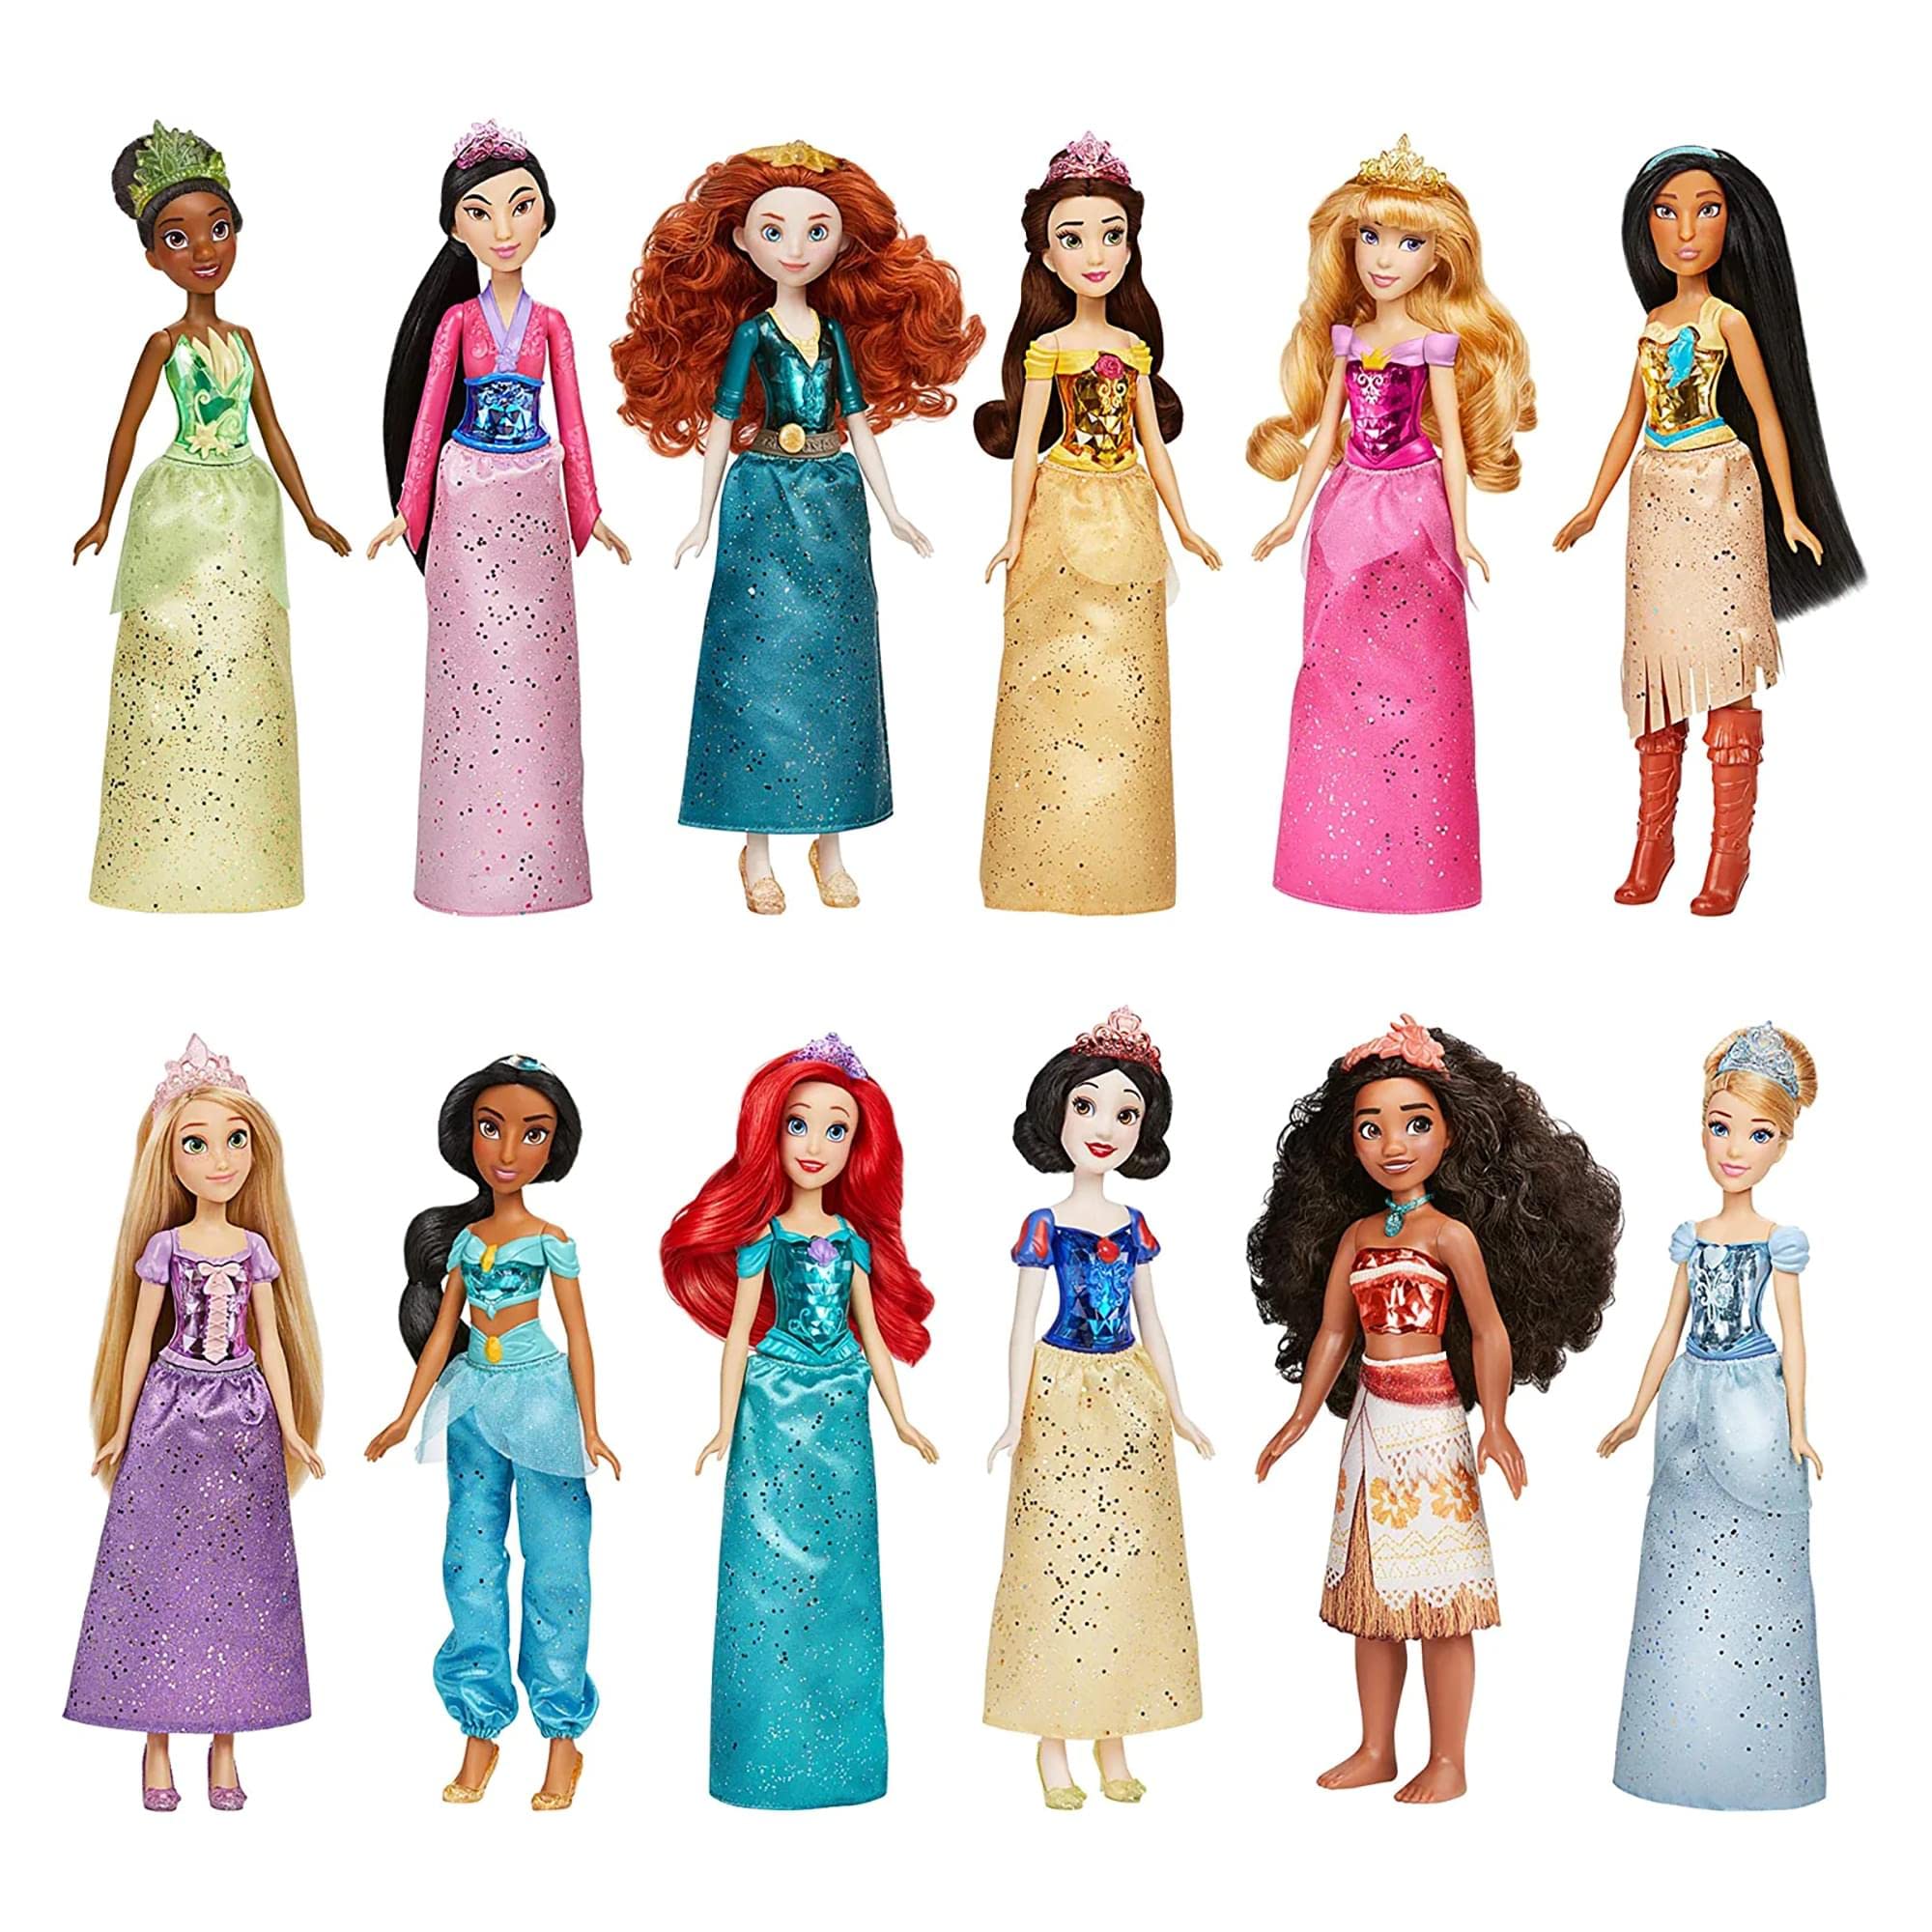 Disney Princess ロイヤルコレクション、スカートとアクセサリー付きロイヤルシマーファッションドール12体、3歳以上の女の子向けおもちゃ (Amazon限定)